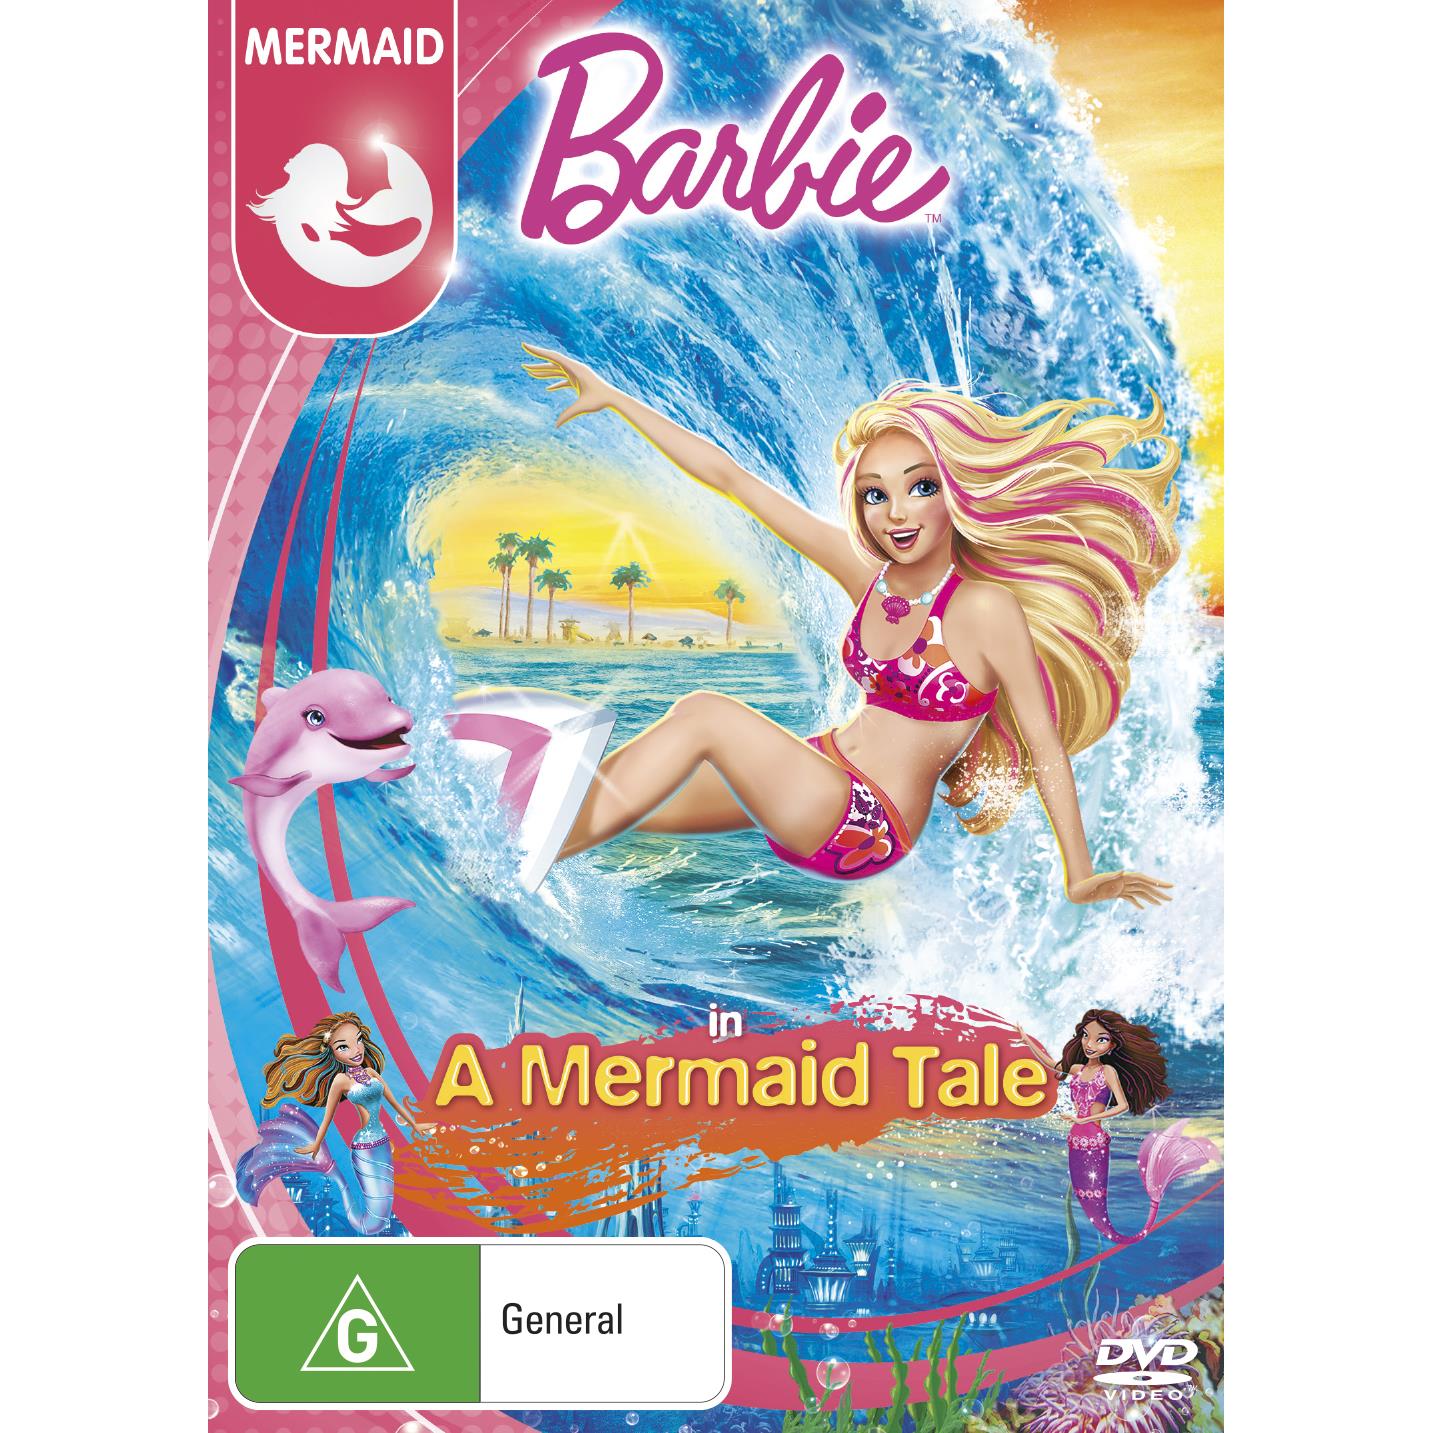 barbie in a mermaid tale